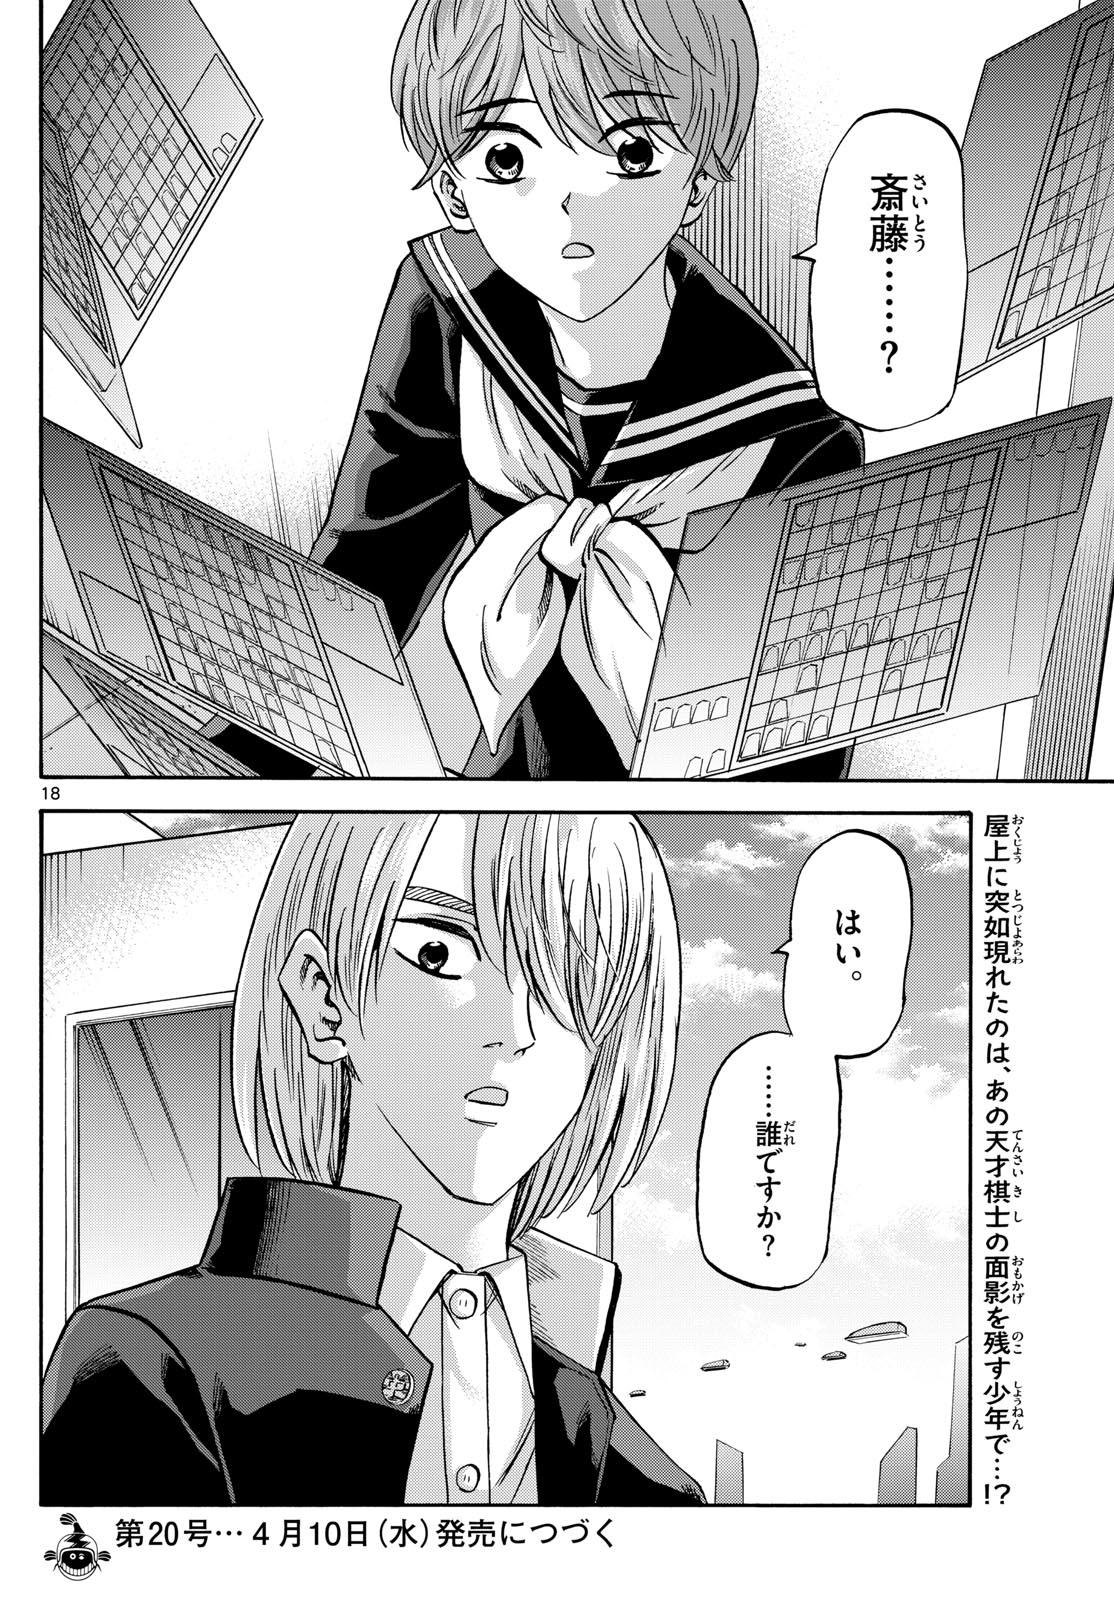 Tatsu to Ichigo - Chapter 186 - Page 18